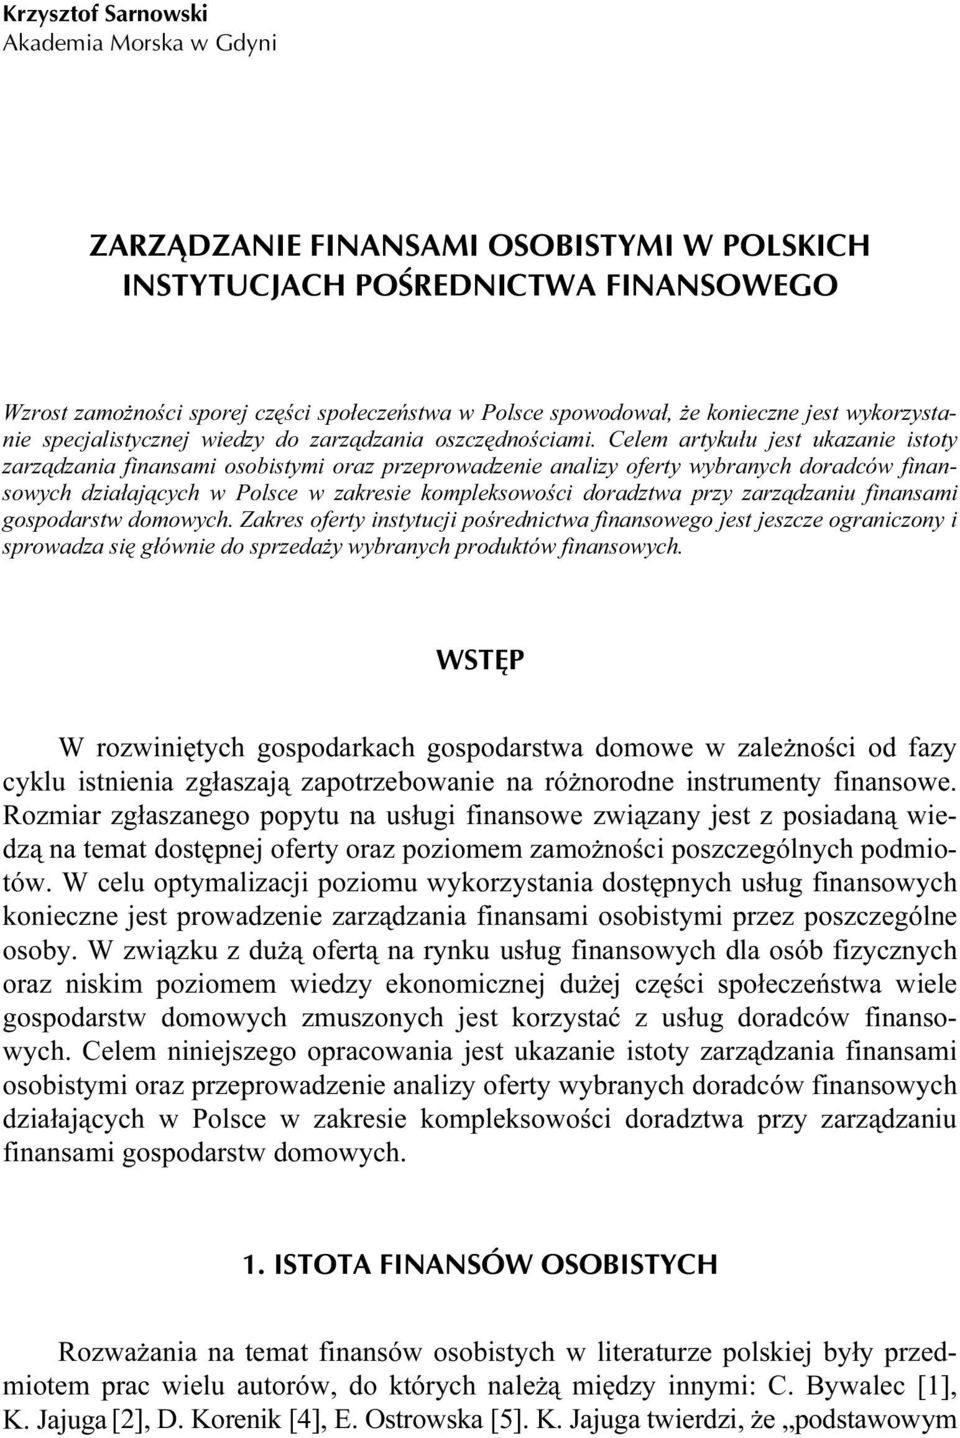 Celem artykułu jest ukazanie istoty zarządzania finansami osobistymi oraz przeprowadzenie analizy oferty wybranych doradców finansowych działających w Polsce w zakresie kompleksowości doradztwa przy